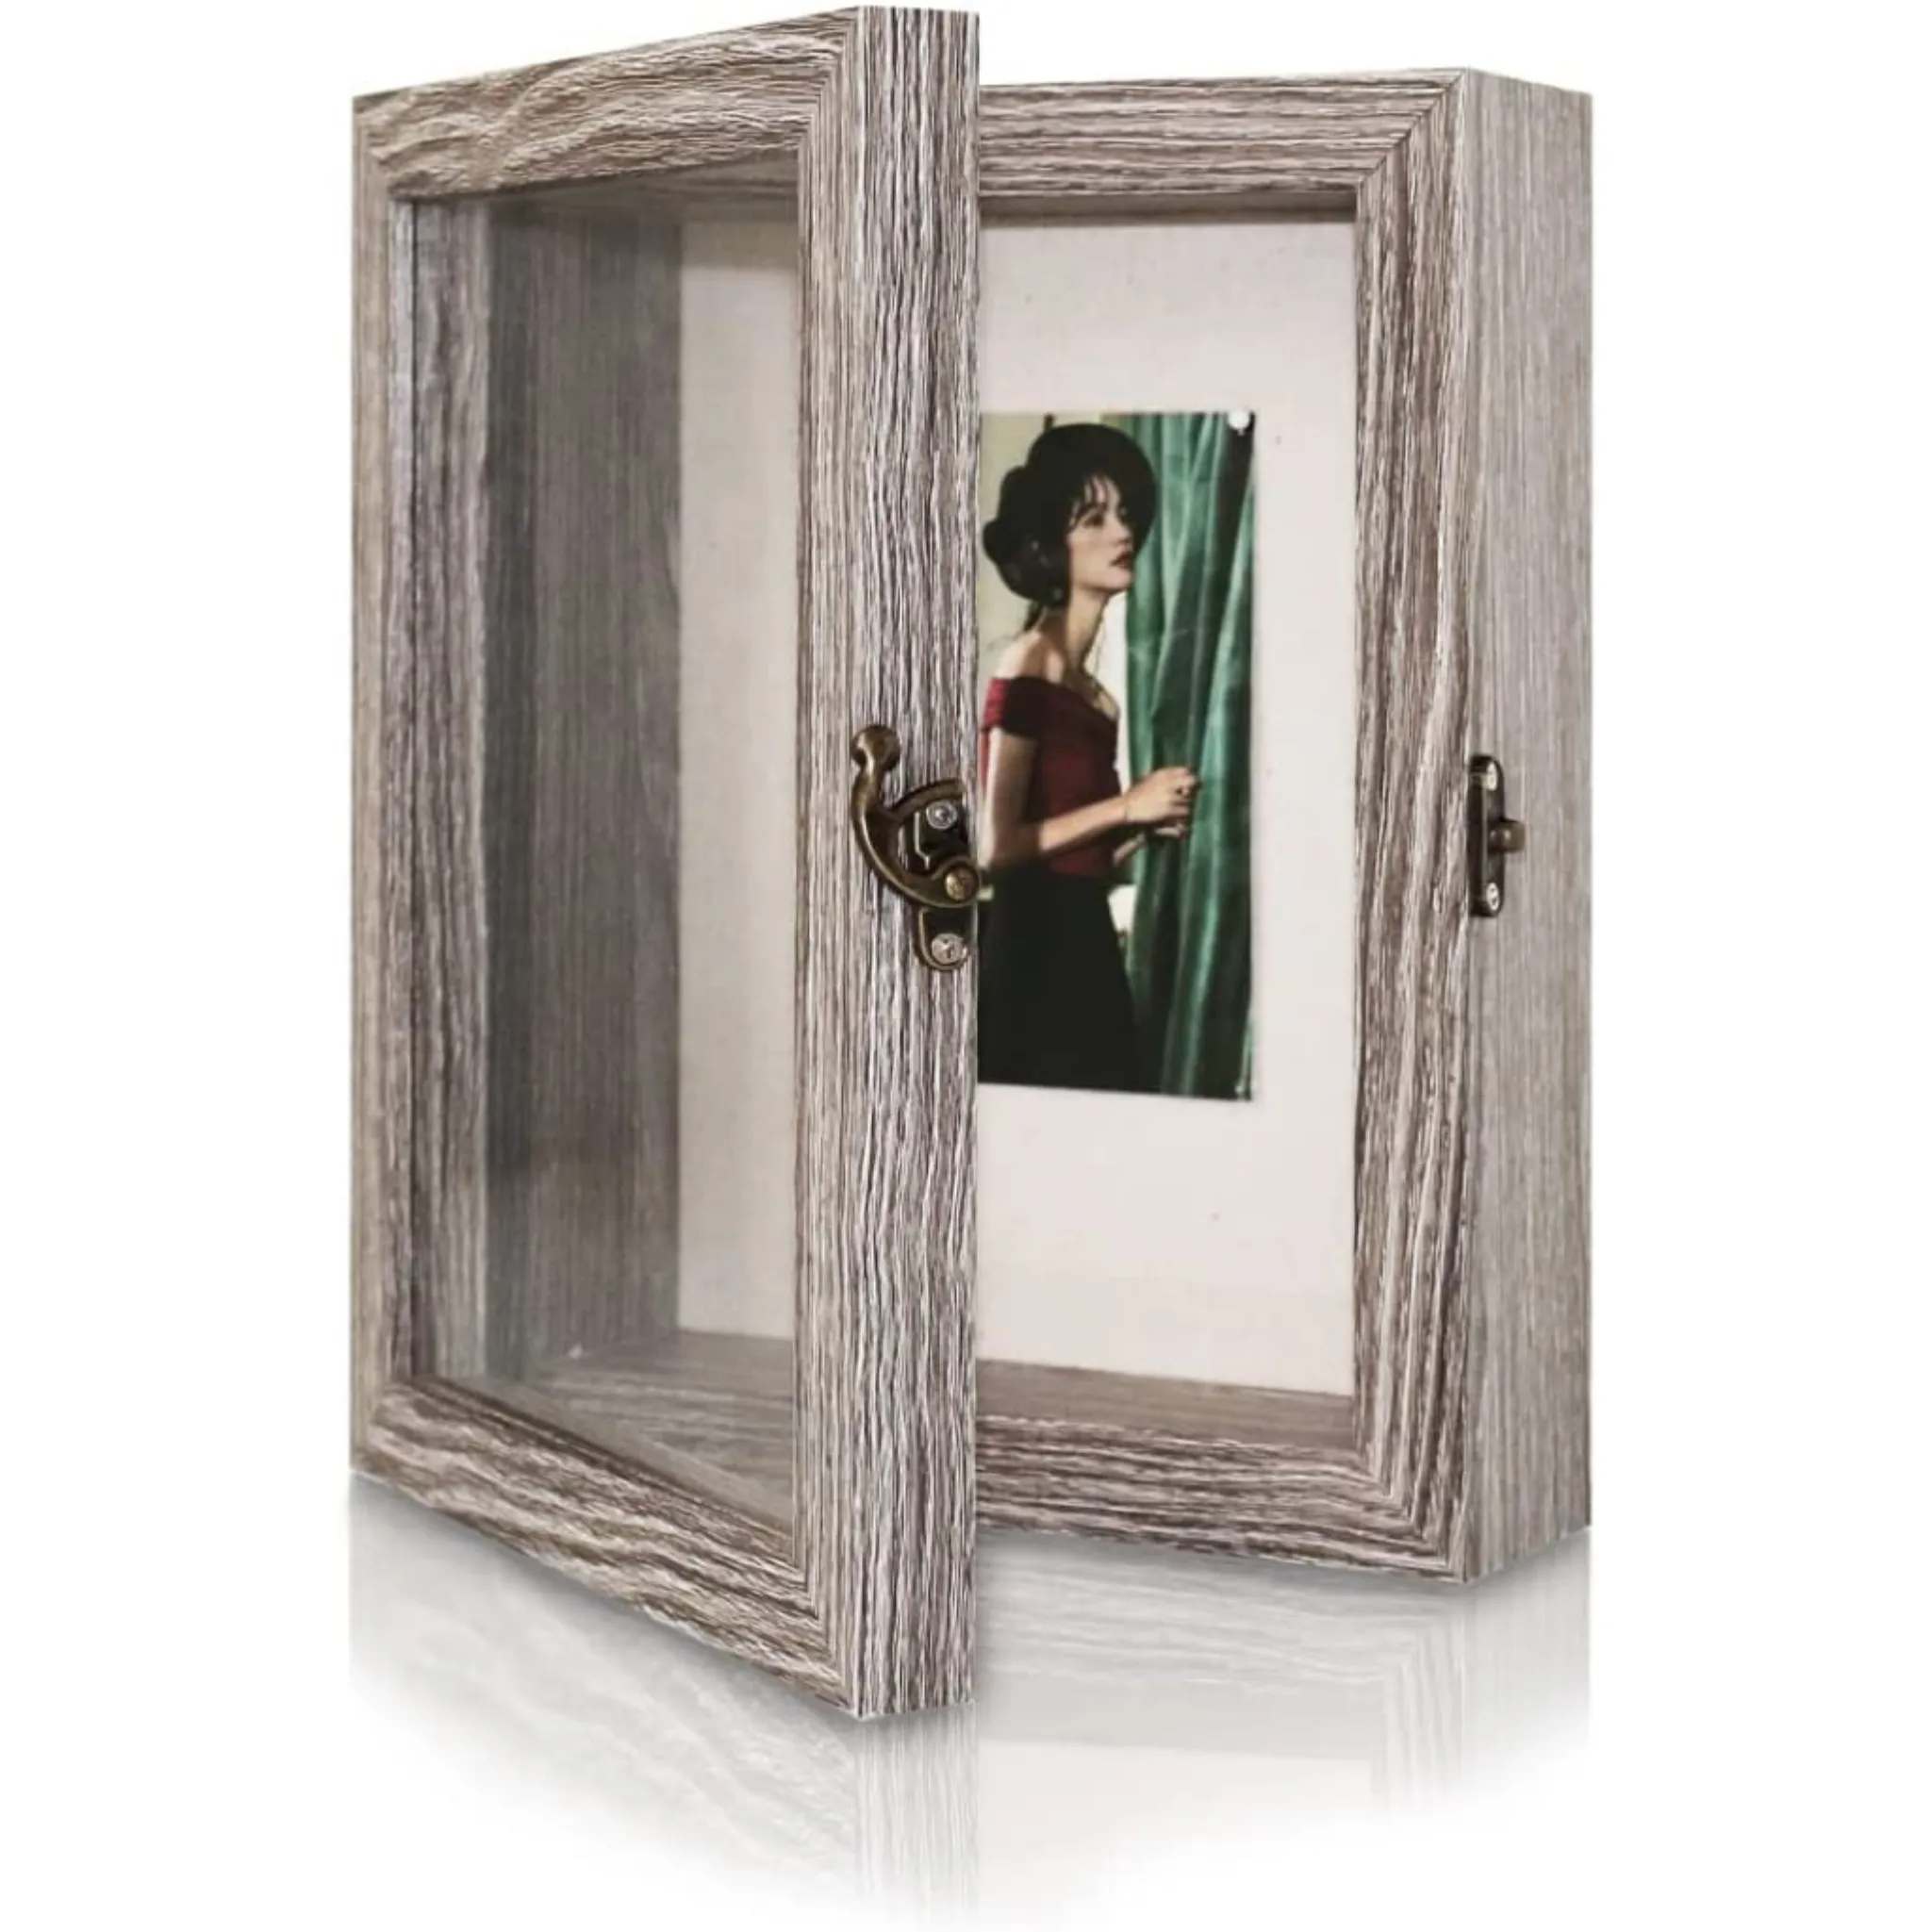 Shadow Box Case Display 8x10, rustikaler Holz speicher Bilderrahmen mit Glasfenster für Andenken und Bilder